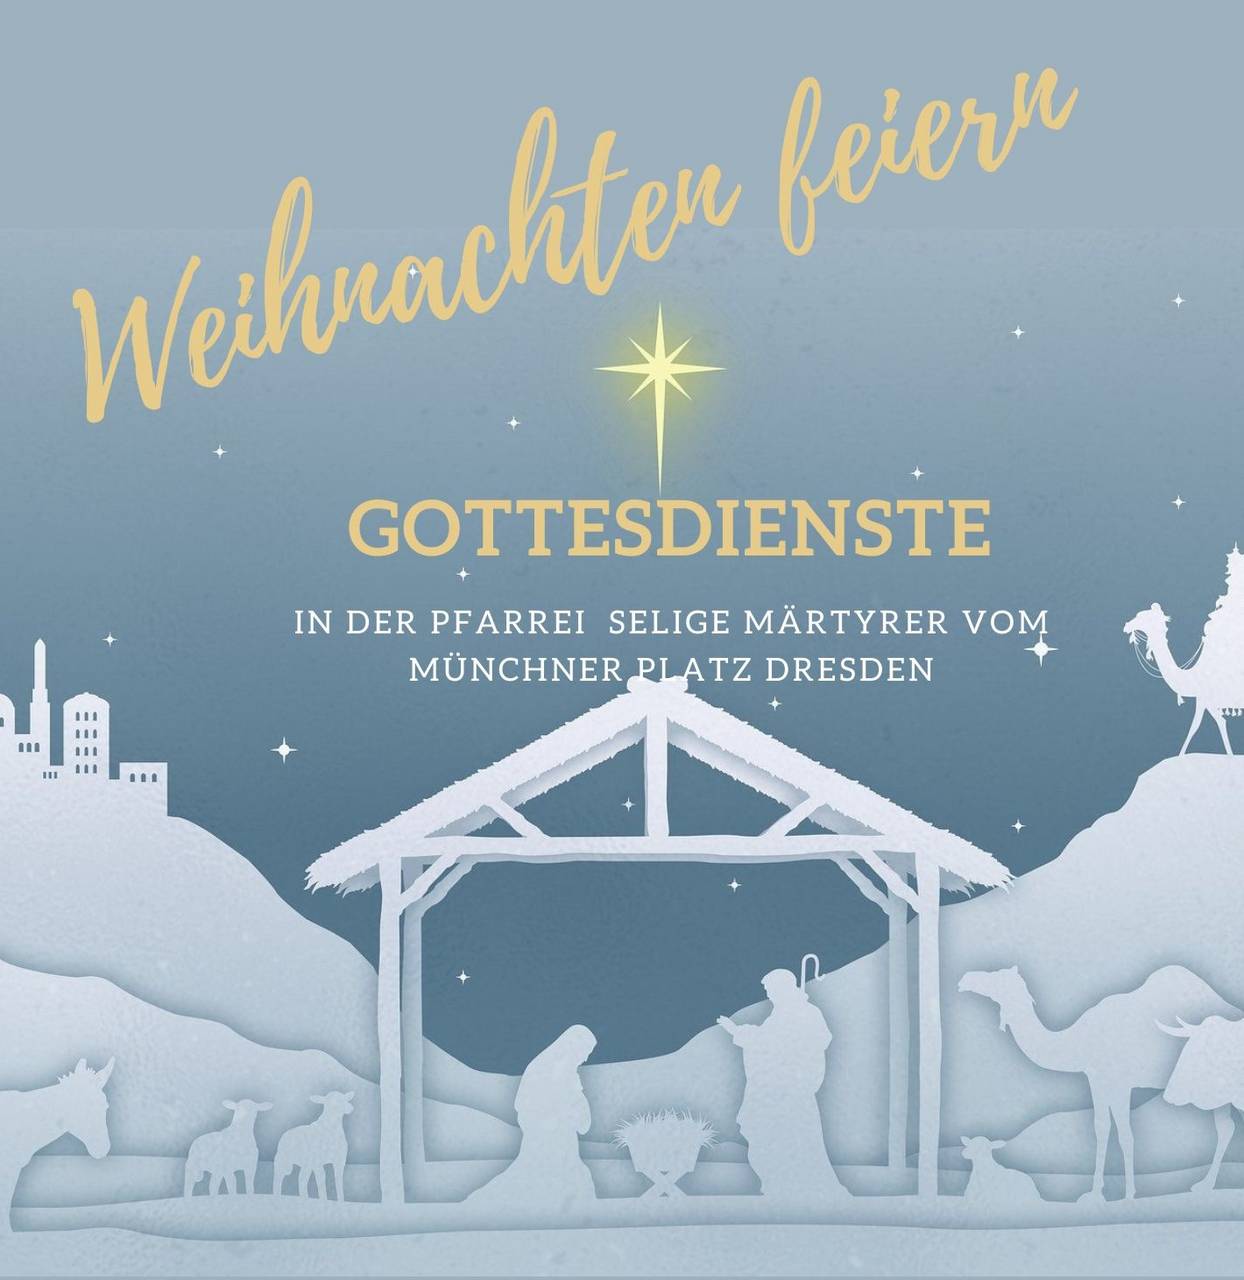 m_white and gold bethlehem church invitation-1 | Kath. Pfarrei Selige Märtyrer vom Münchner Platz - Aktuelles St. Marien - Weihnachten in der Pfarrei